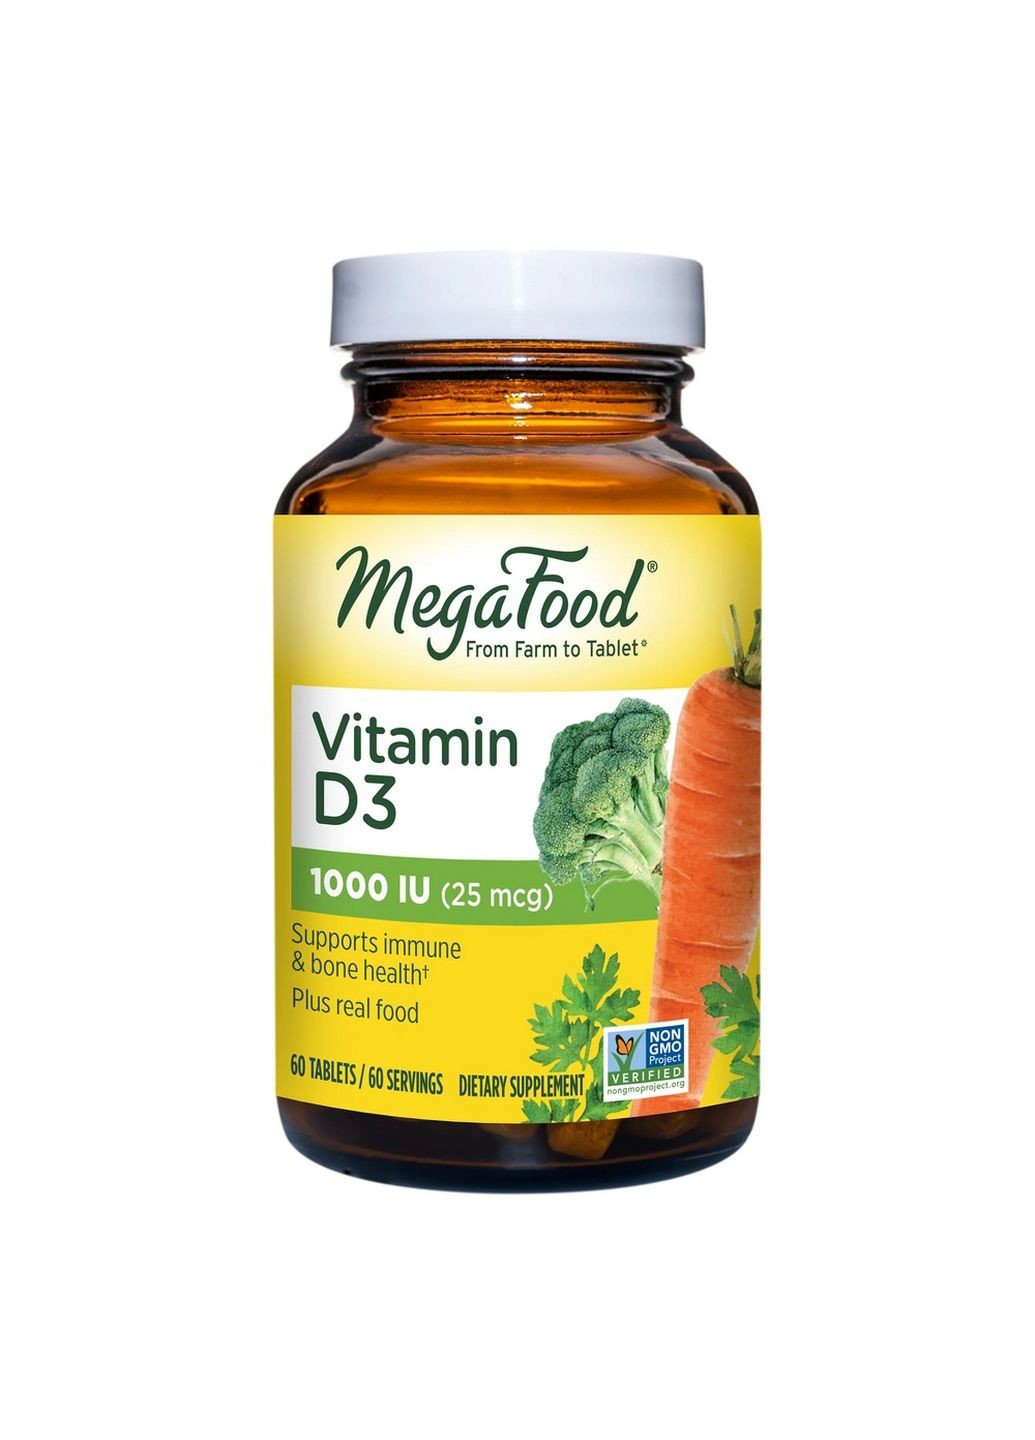 Витамины и минералы Vitamin D3 1000 UI, 60 таблеток MegaFood (293480372)